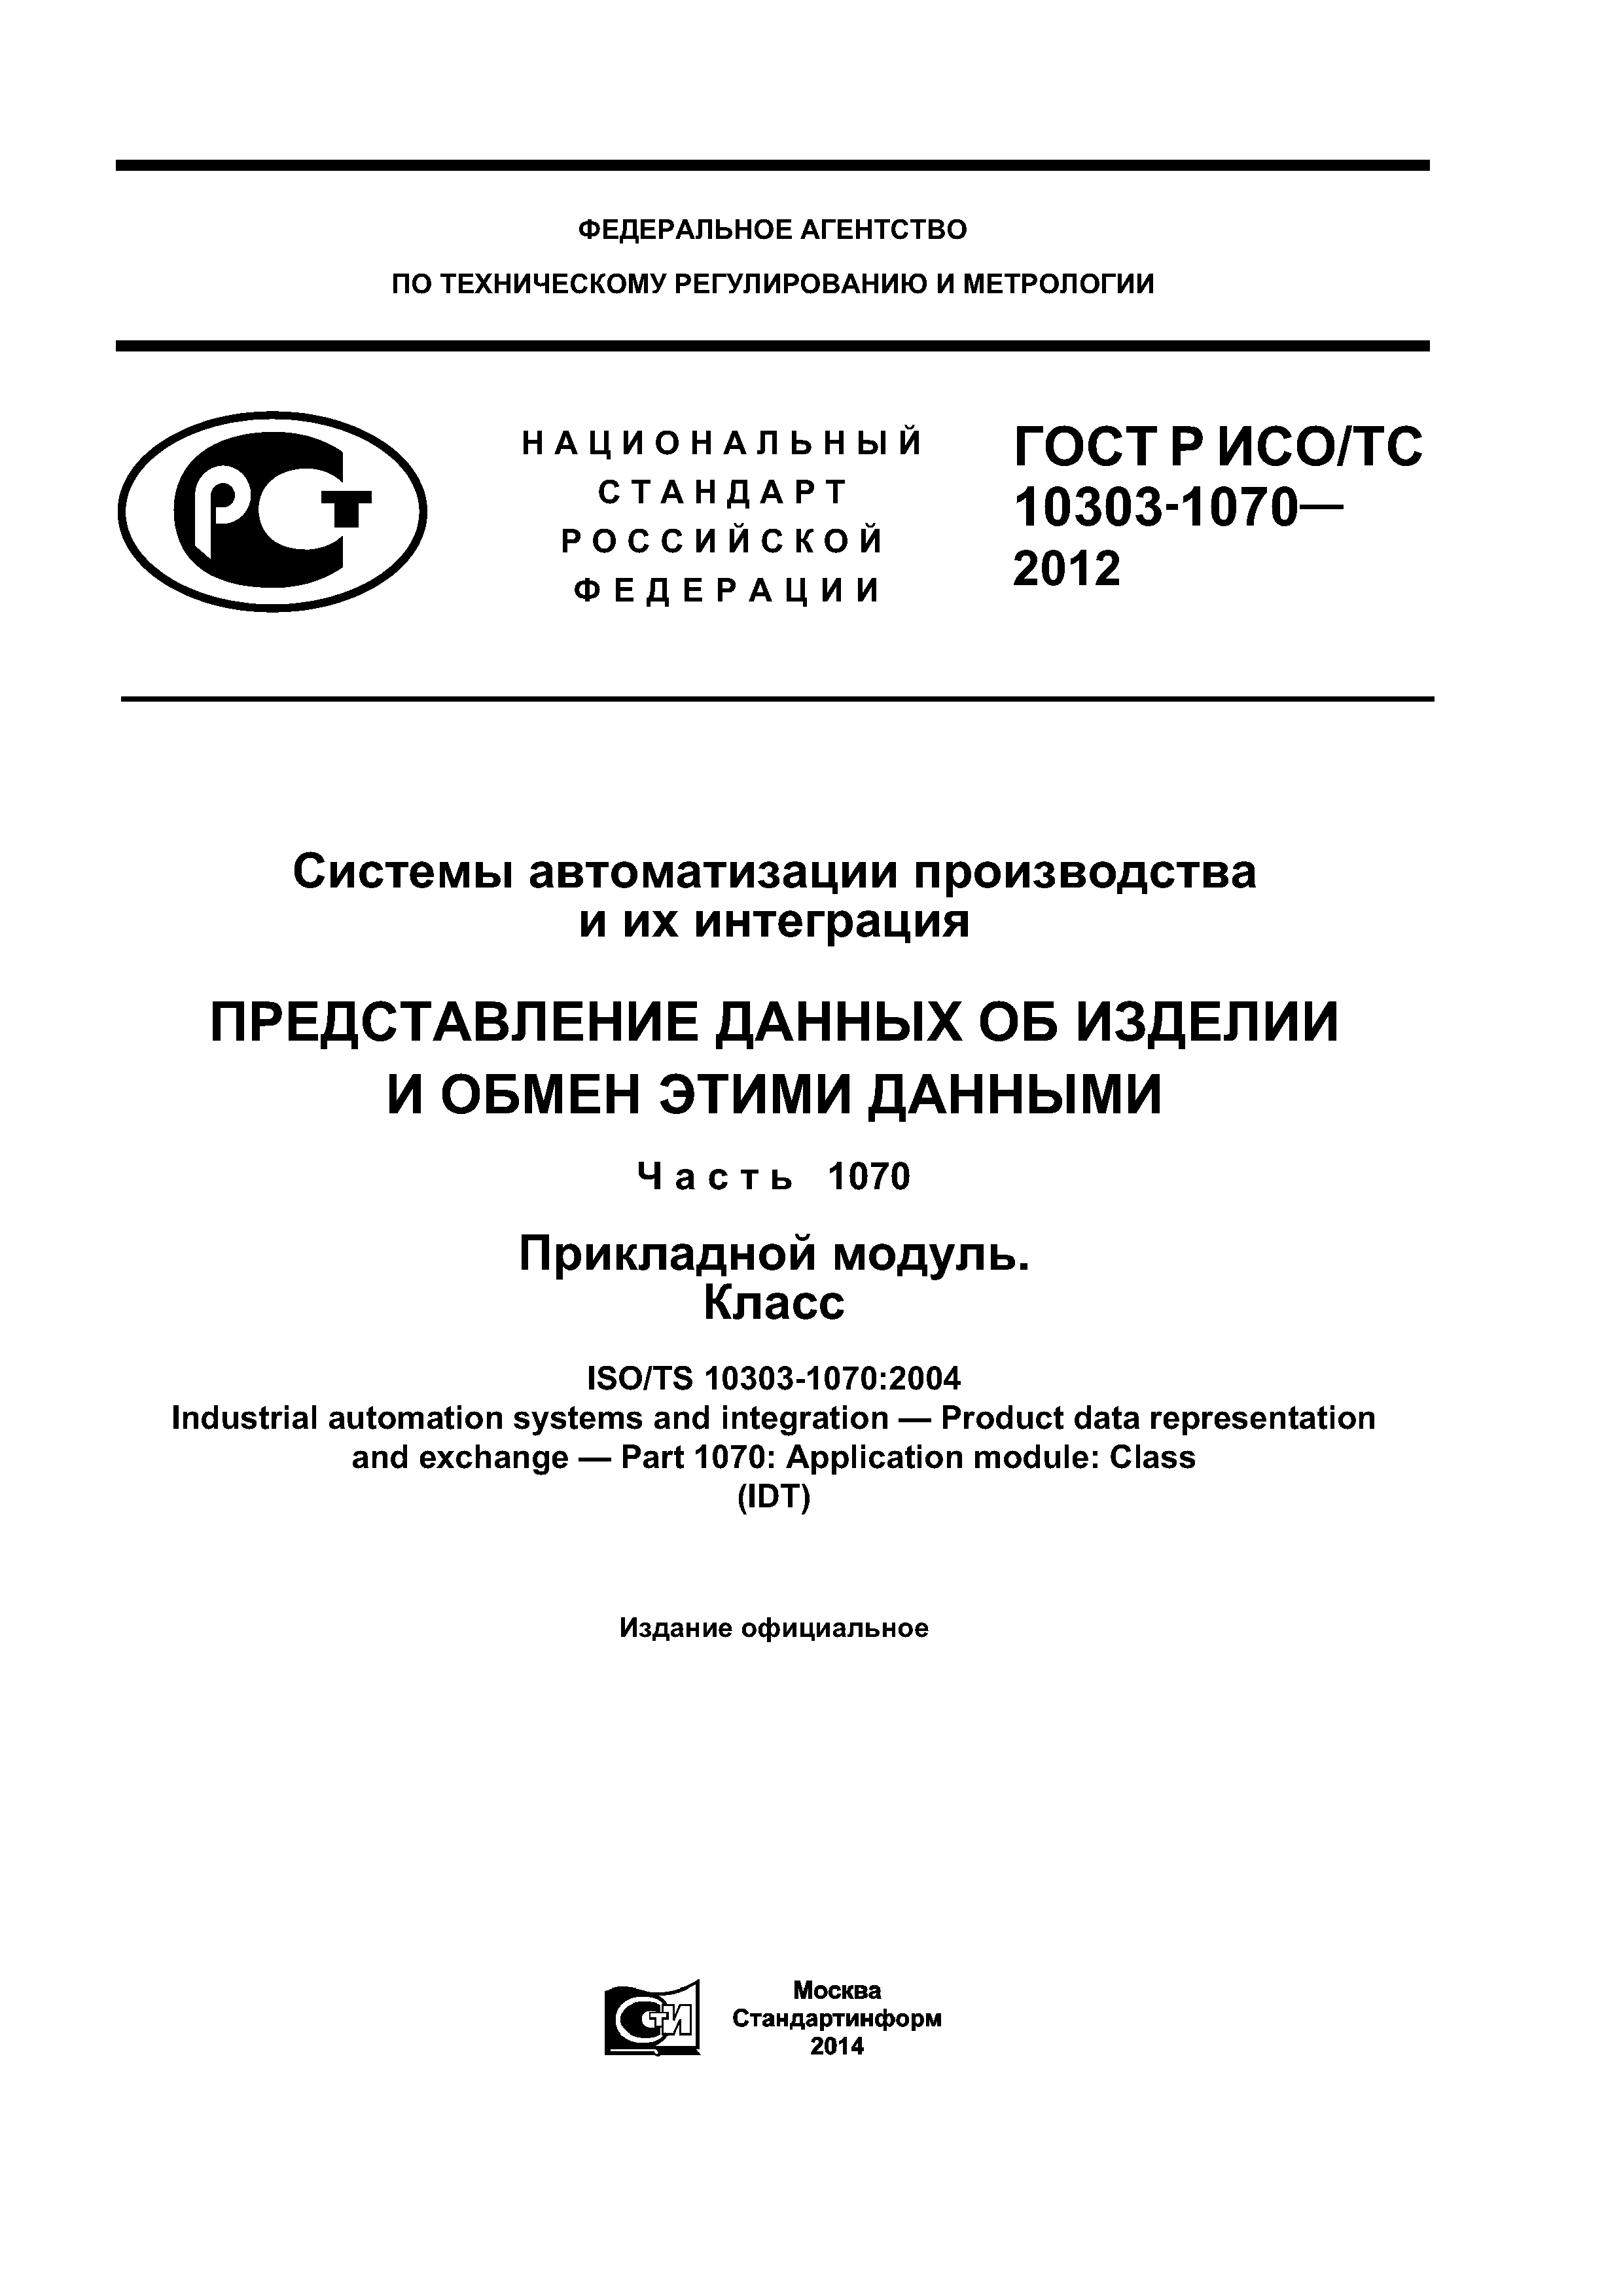 ГОСТ Р ИСО/ТС 10303-1070-2012